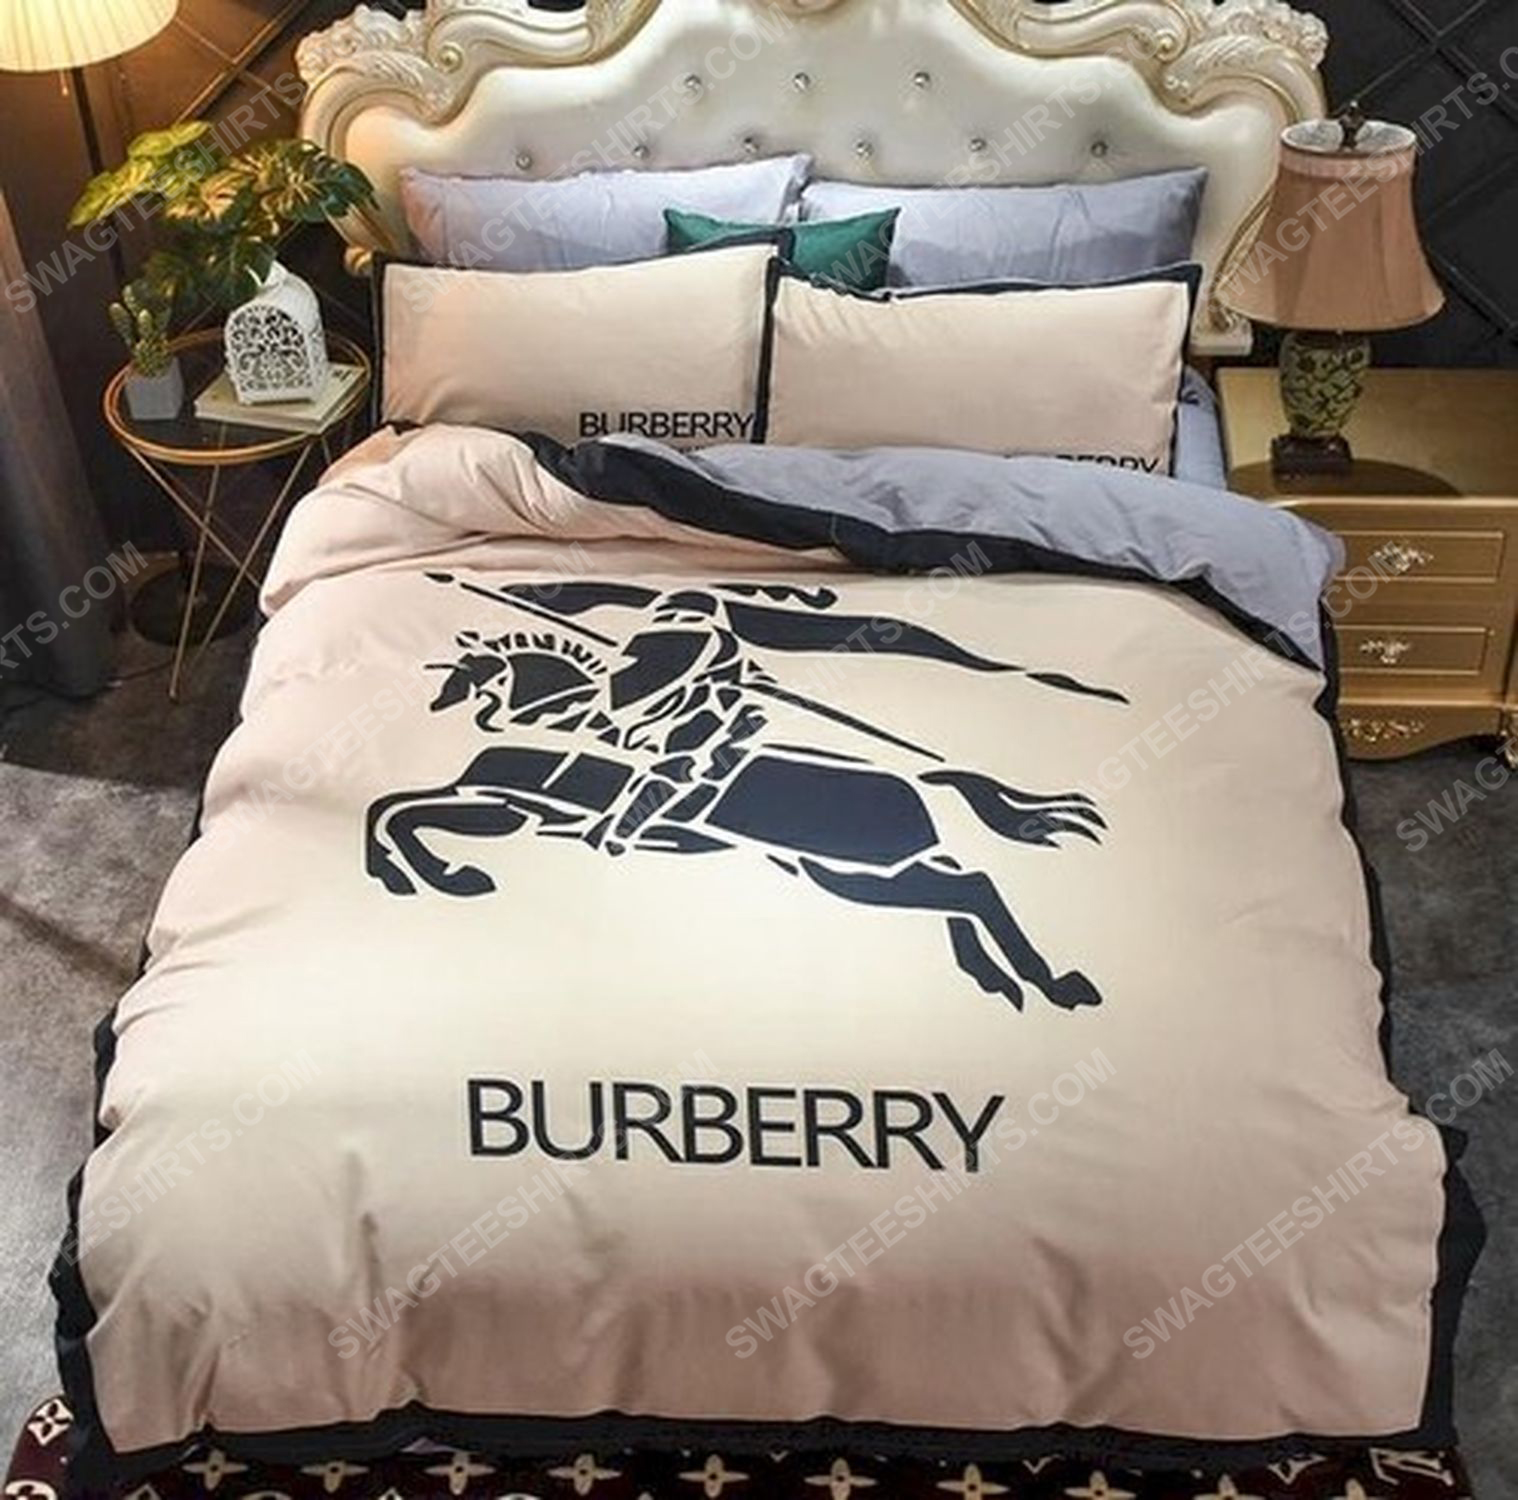 Burberry symbol full print duvet cover bedding set 1